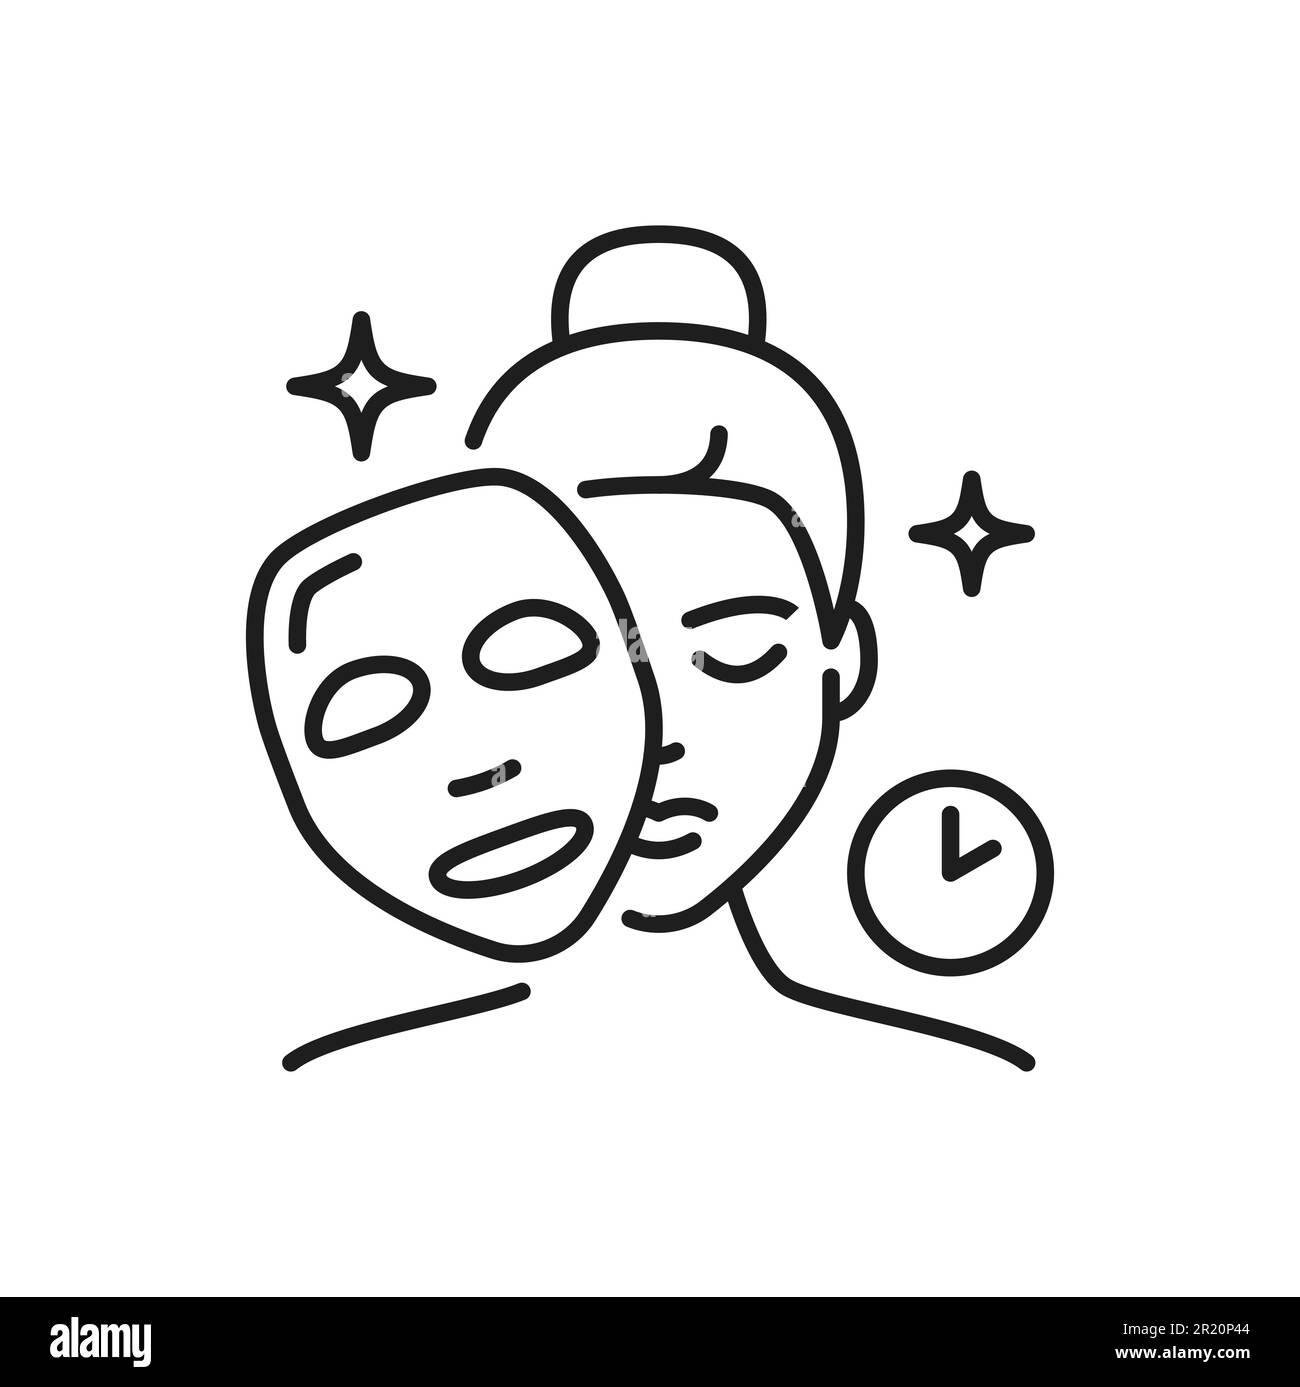 Gesichtsmaskensymbol, Gesichtspflege und Kosmetik, Piktogramm mit Vektoranweisung. Frauen Hautpflege und Gesichtsbehandlung Gesichtsmaske Symbol mit Uhr für Anti-Aging und feuchtigkeitsspendende Gesichtsmaske Paket Stock Vektor